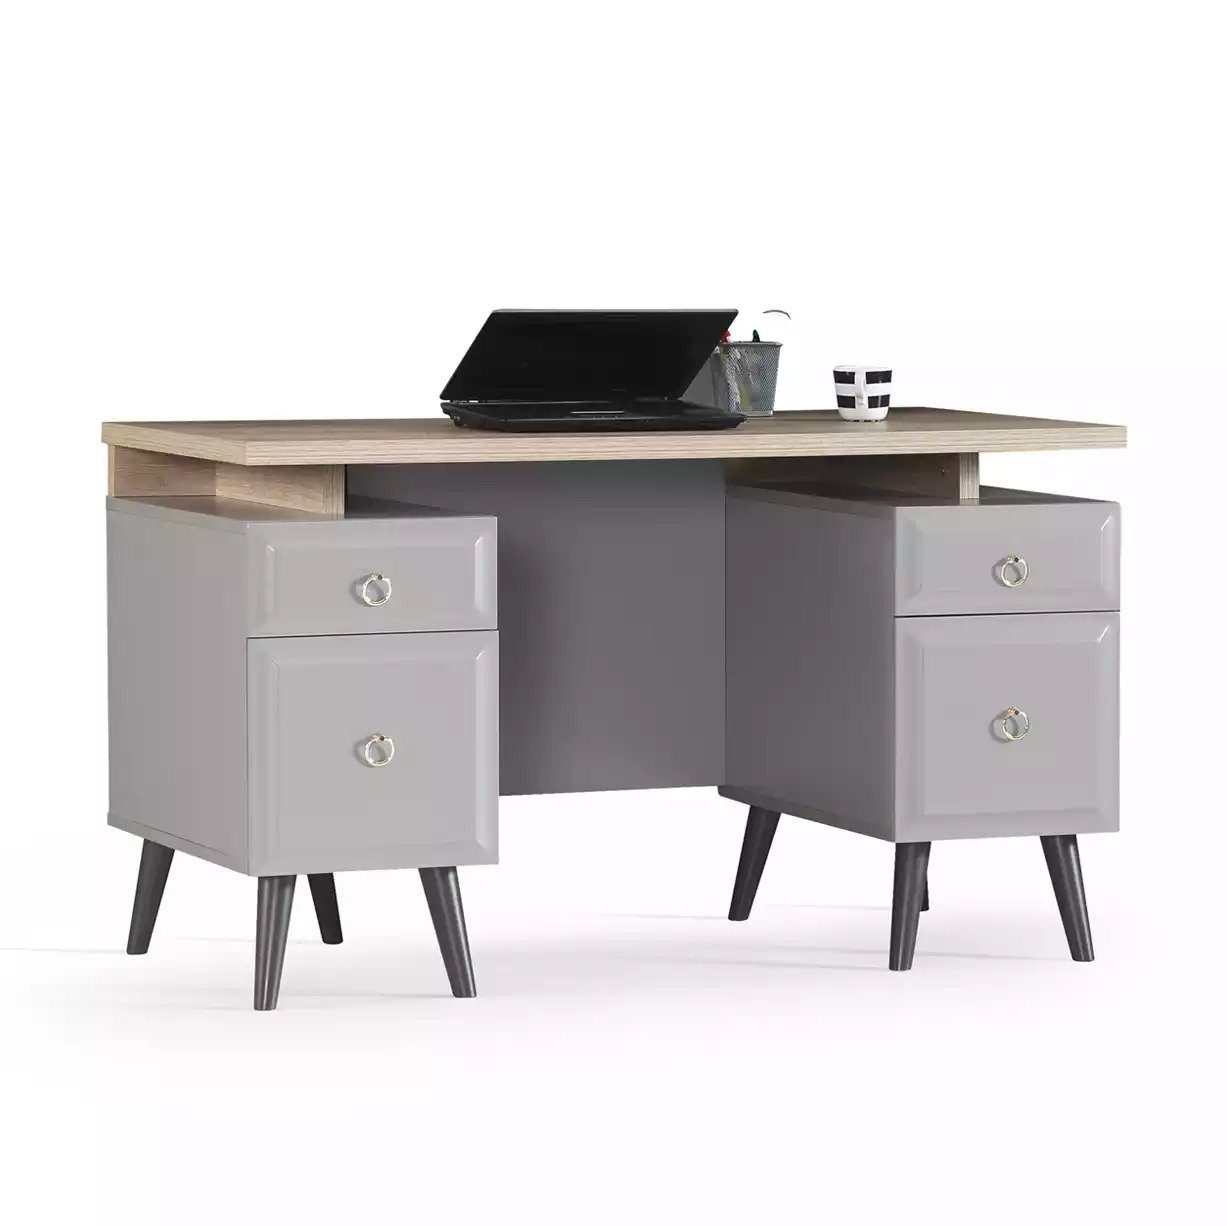 JVmoebel Schreibtisch Computertisch in Neu, Made Tisch Europa Holz Schreibtisch Kinderschreibtisch